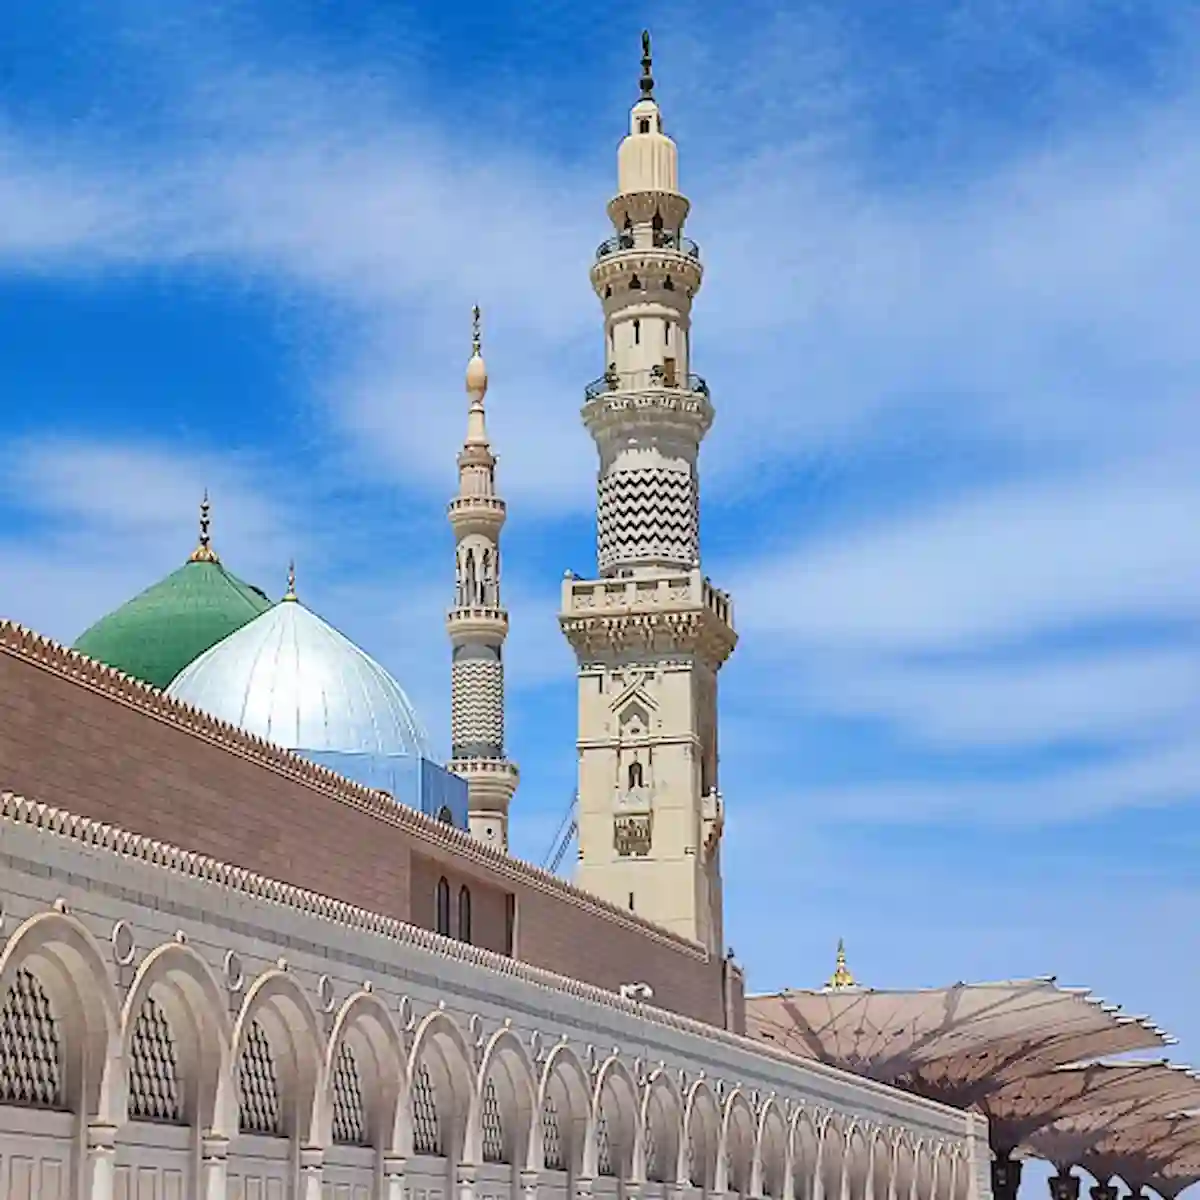 Masjid An-Nabawi